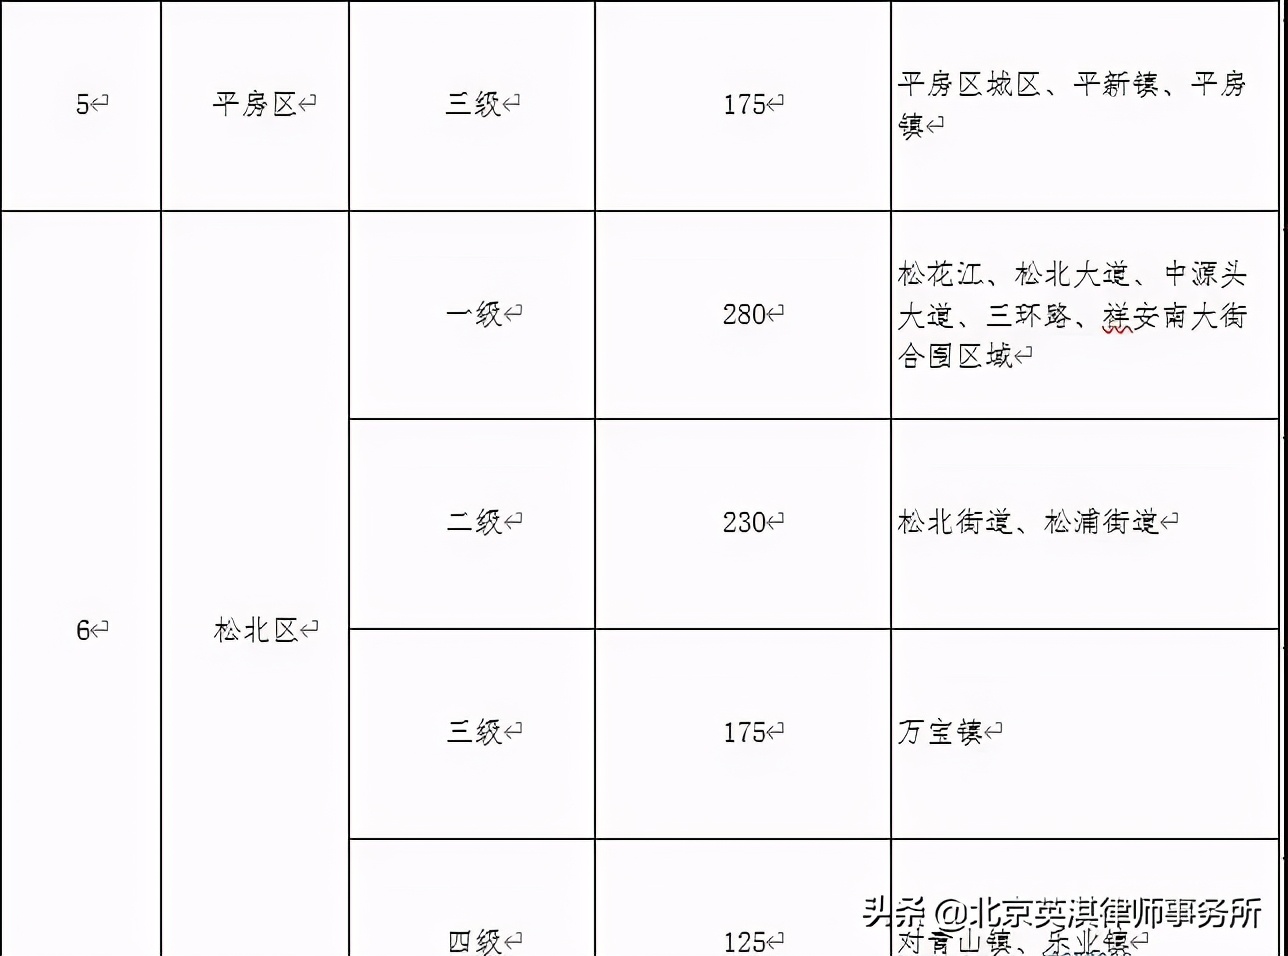 哈尔滨市公布征地区片综合地价标准